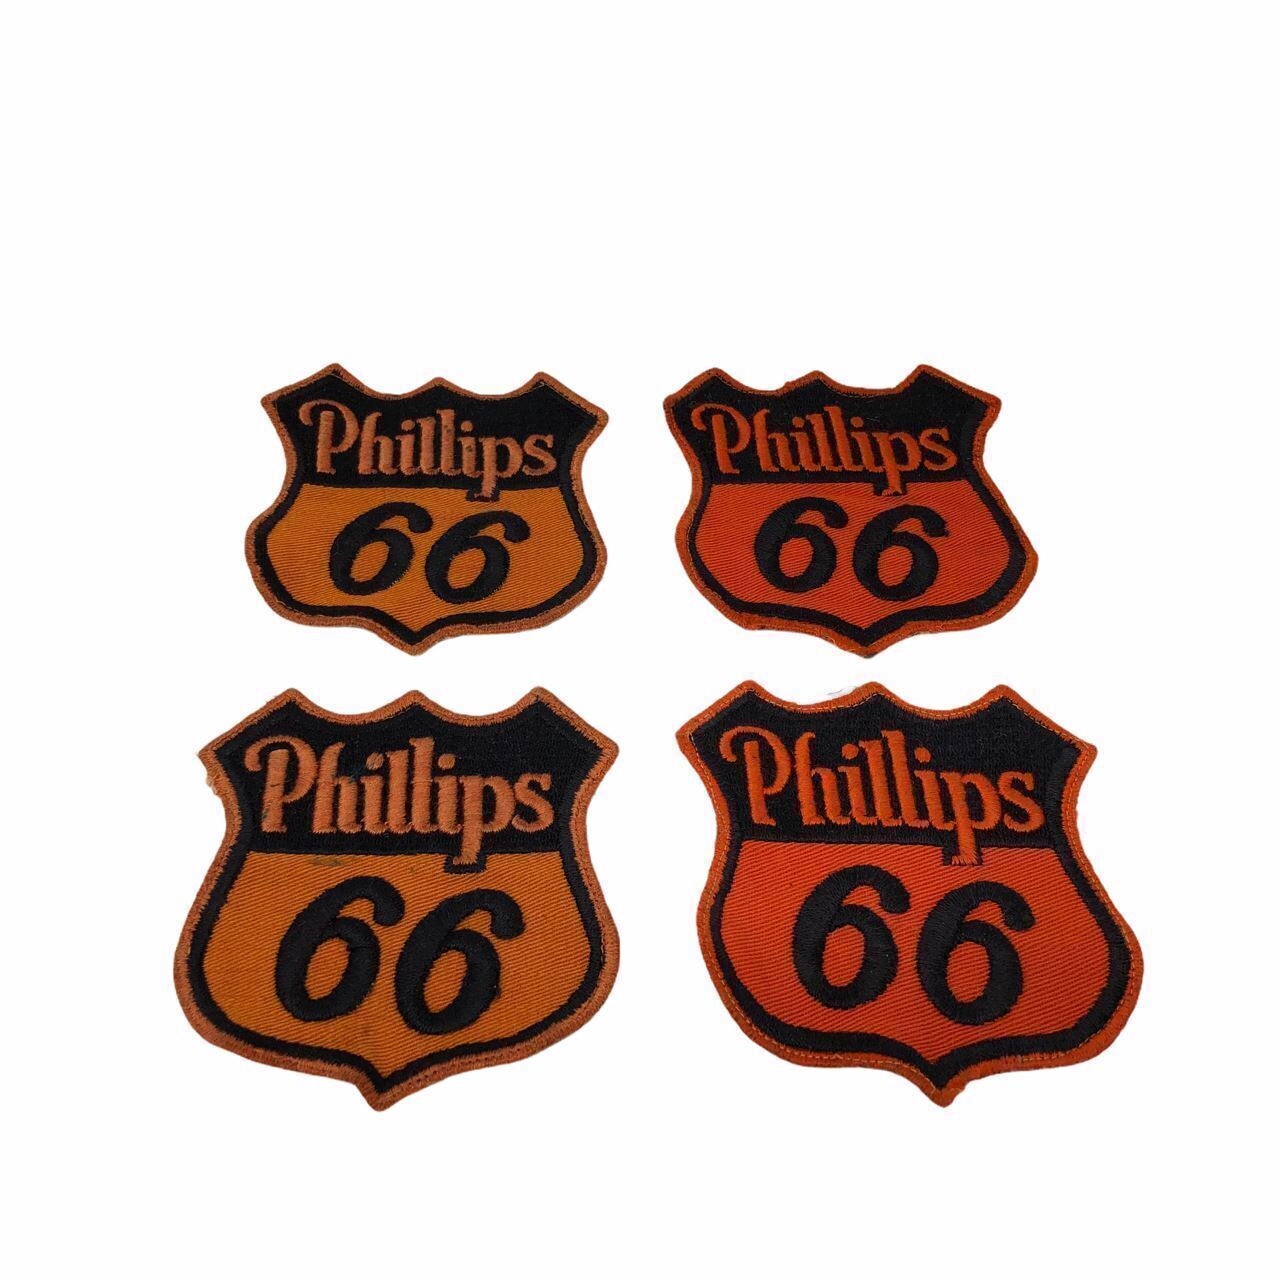 Original 1950's Phillips 66 Gas Gasoline Oil Service Station Uniform Patch Lot 4